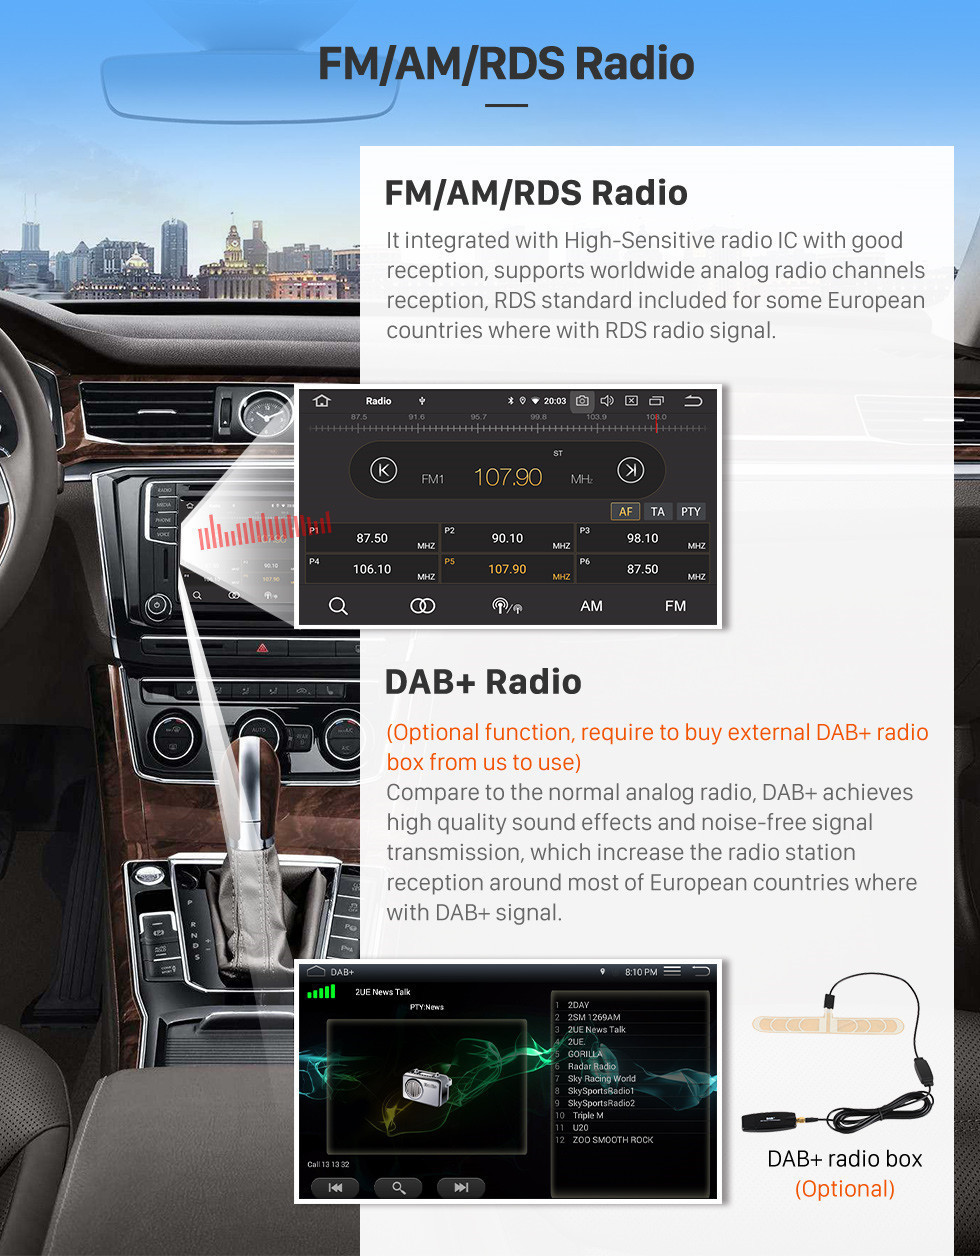 Seicane 9 pulgadas 2007-2012 Toyota Vios Android 11.0 HD Pantalla táctil Sistema de navegación GPS Auto Estéreo Soporte para auto estéreo OBDII 3G / 4G WIFI Control de volante de video DVR